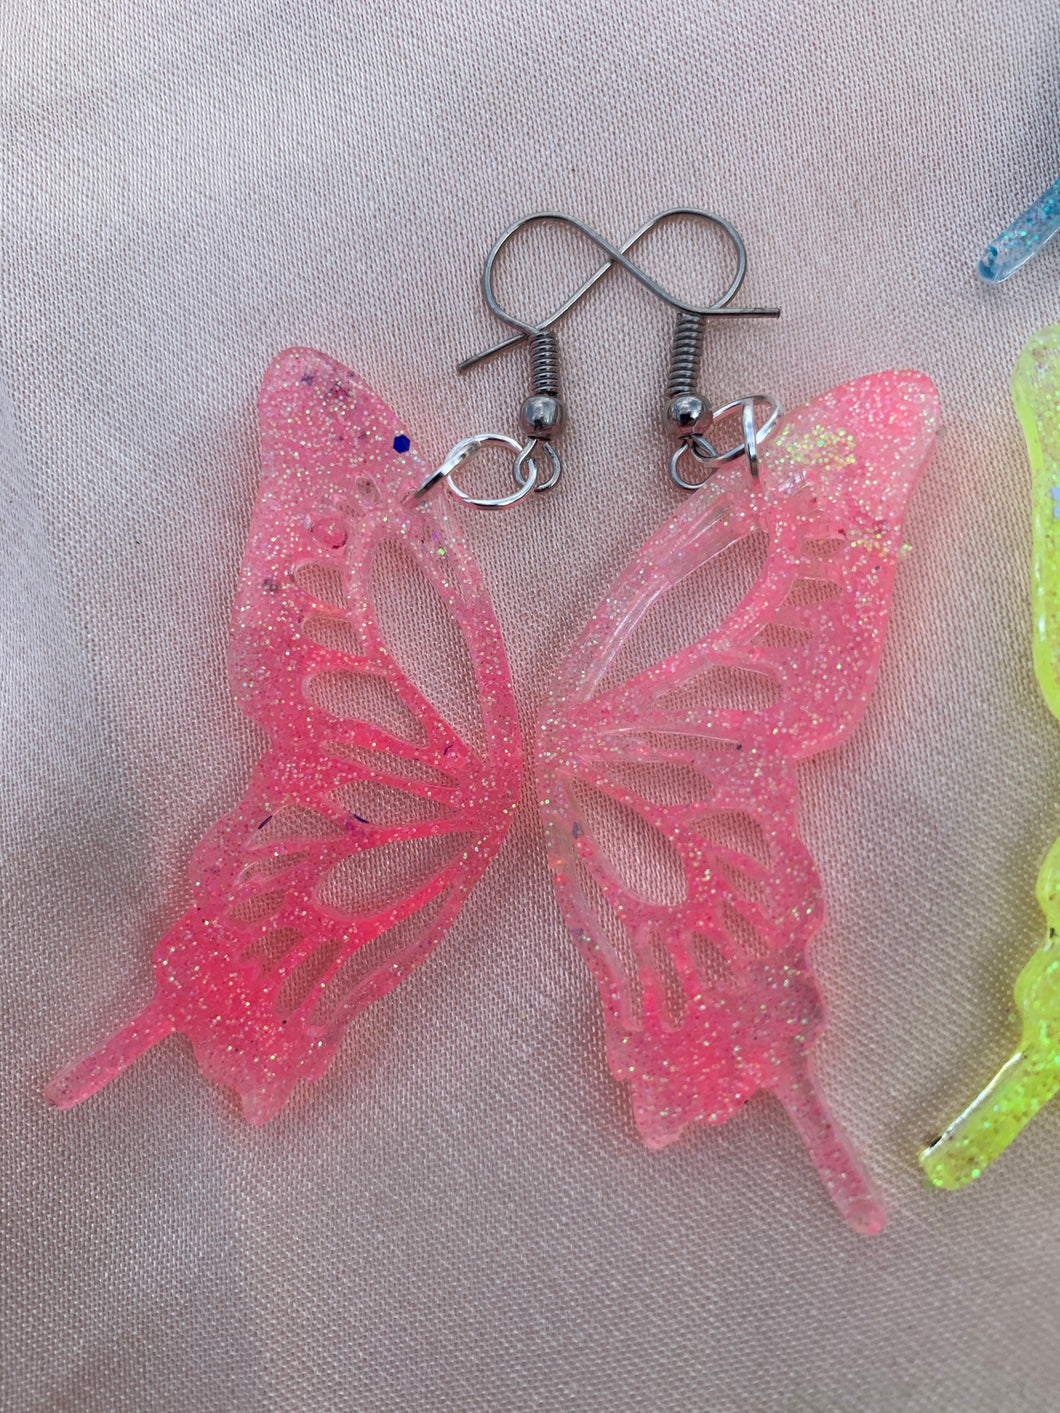 Neon butterfly wing earrings